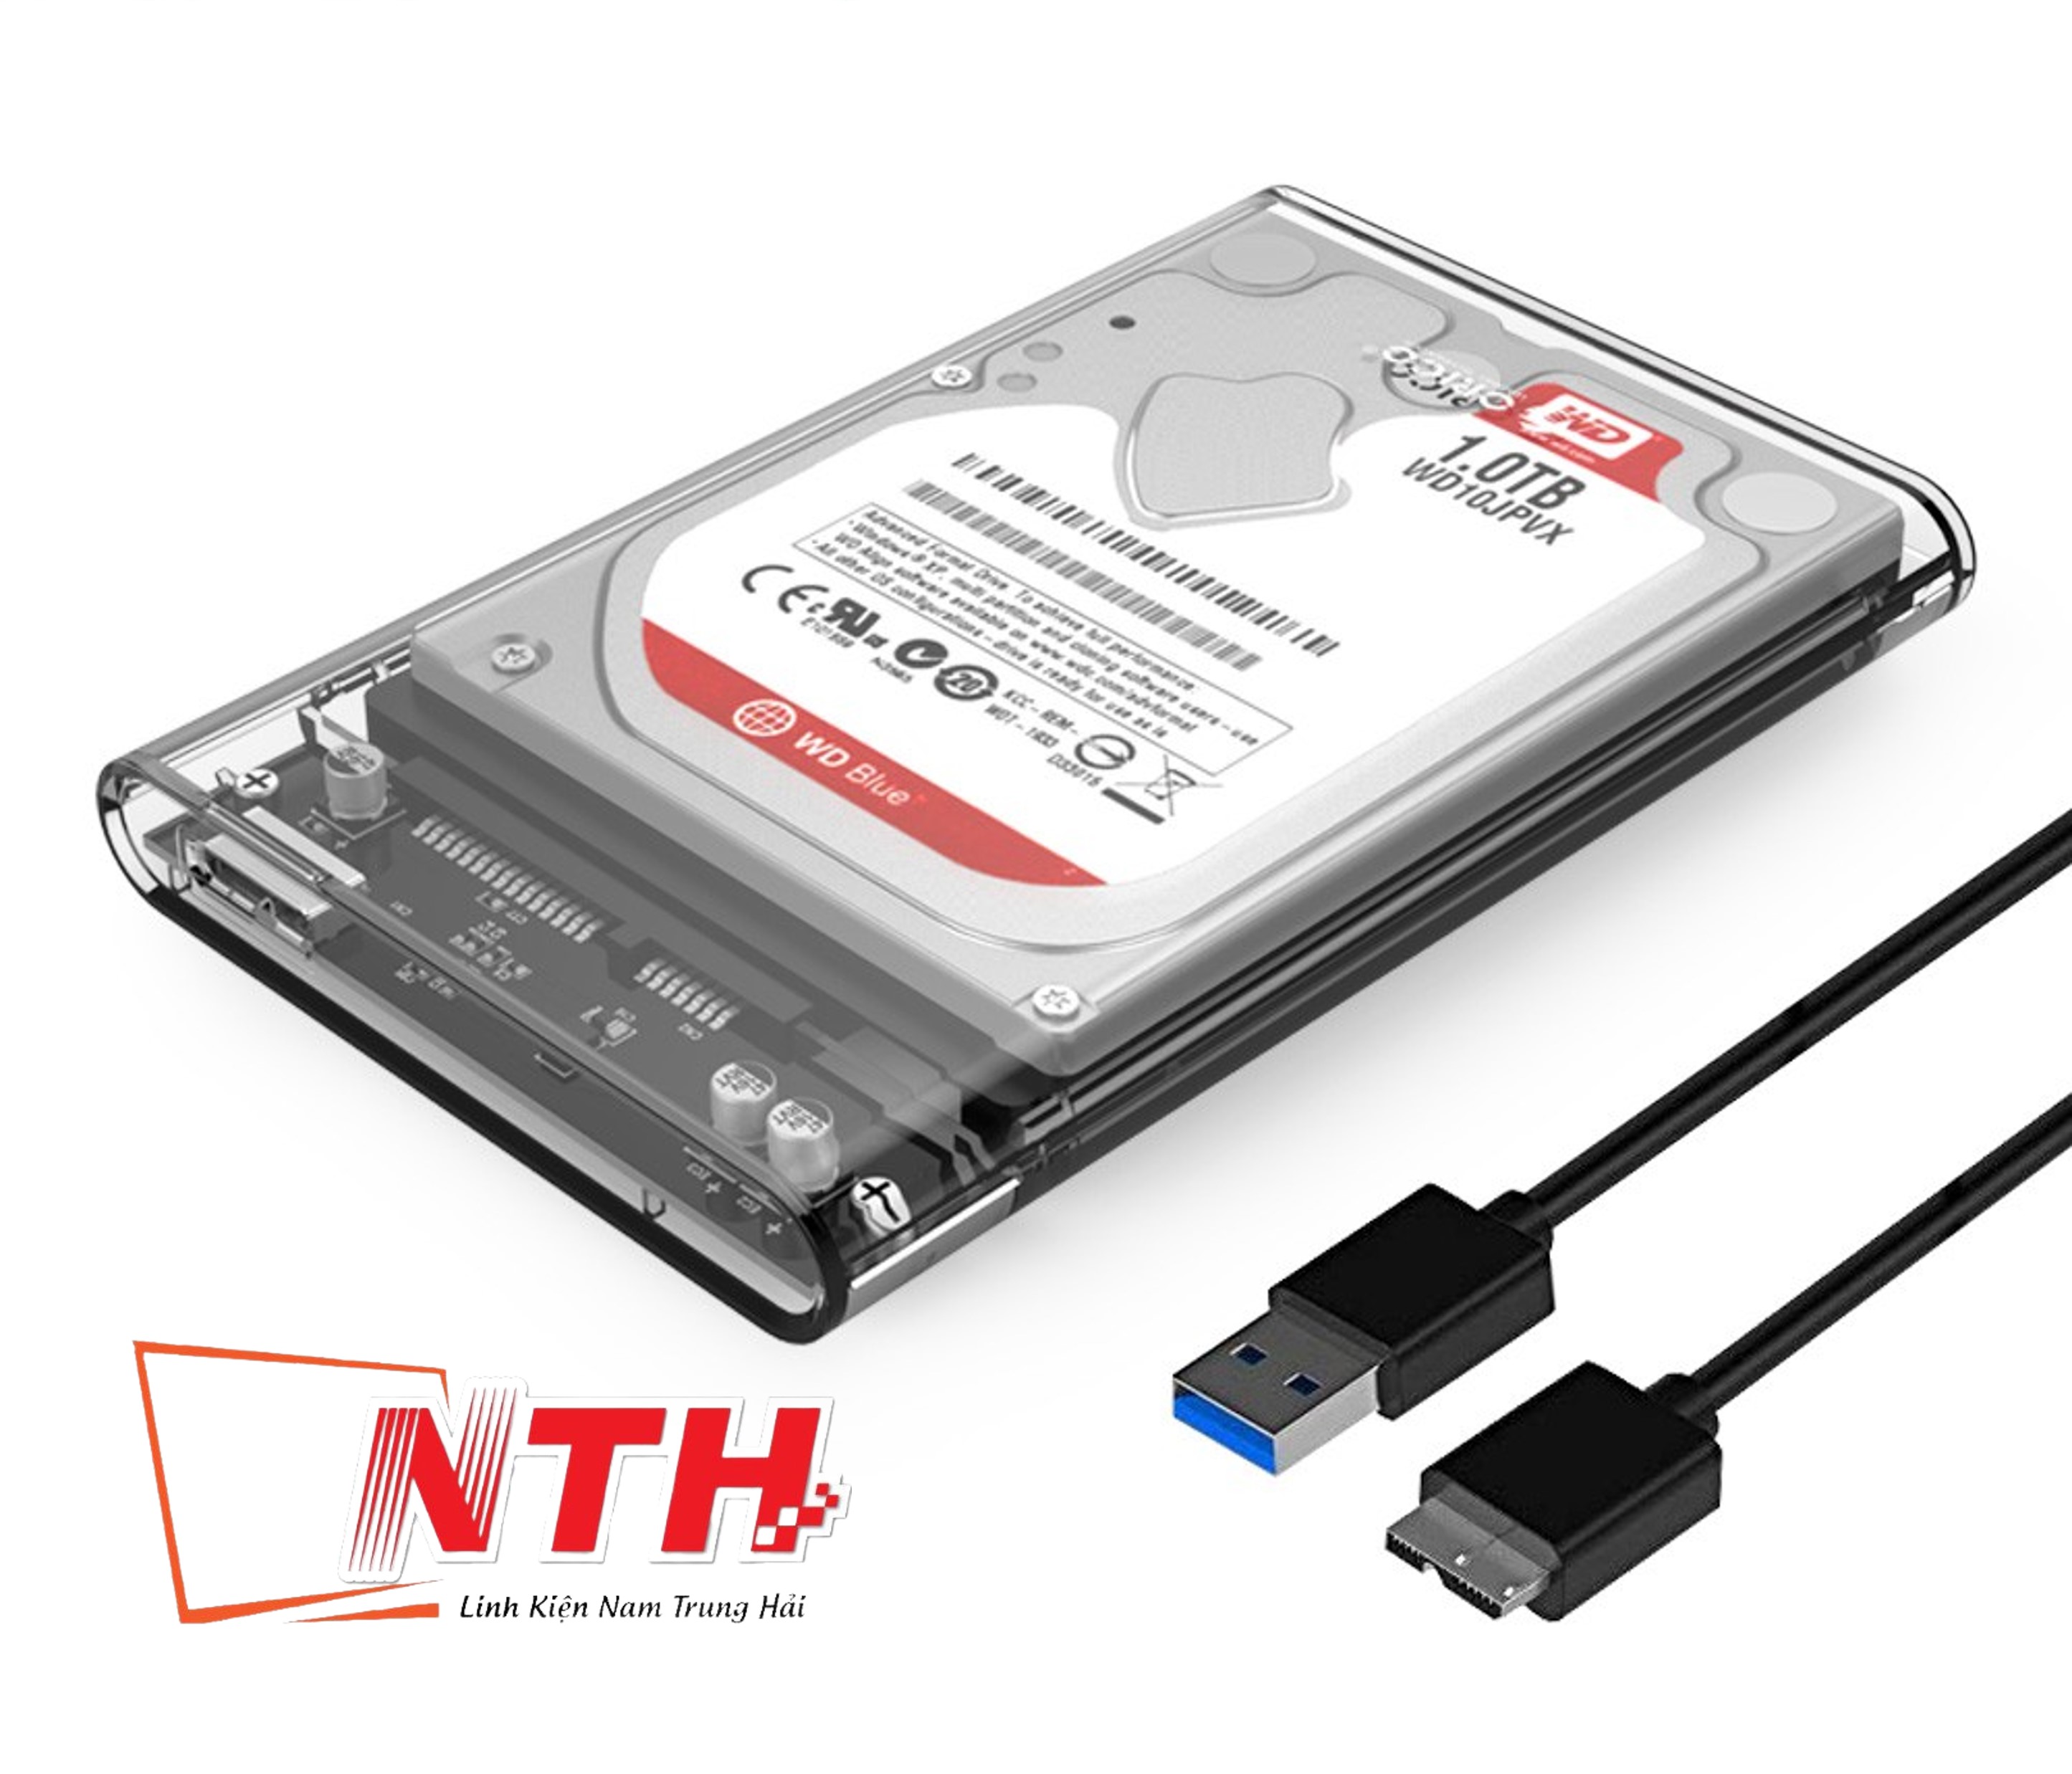 Box Gắn Ổ Cứng Di Động SSD HDD GLOWAY 2.5 Usb 3.0 Tốc Độ 5Gb/s Nhựa Abs Trong Suốt